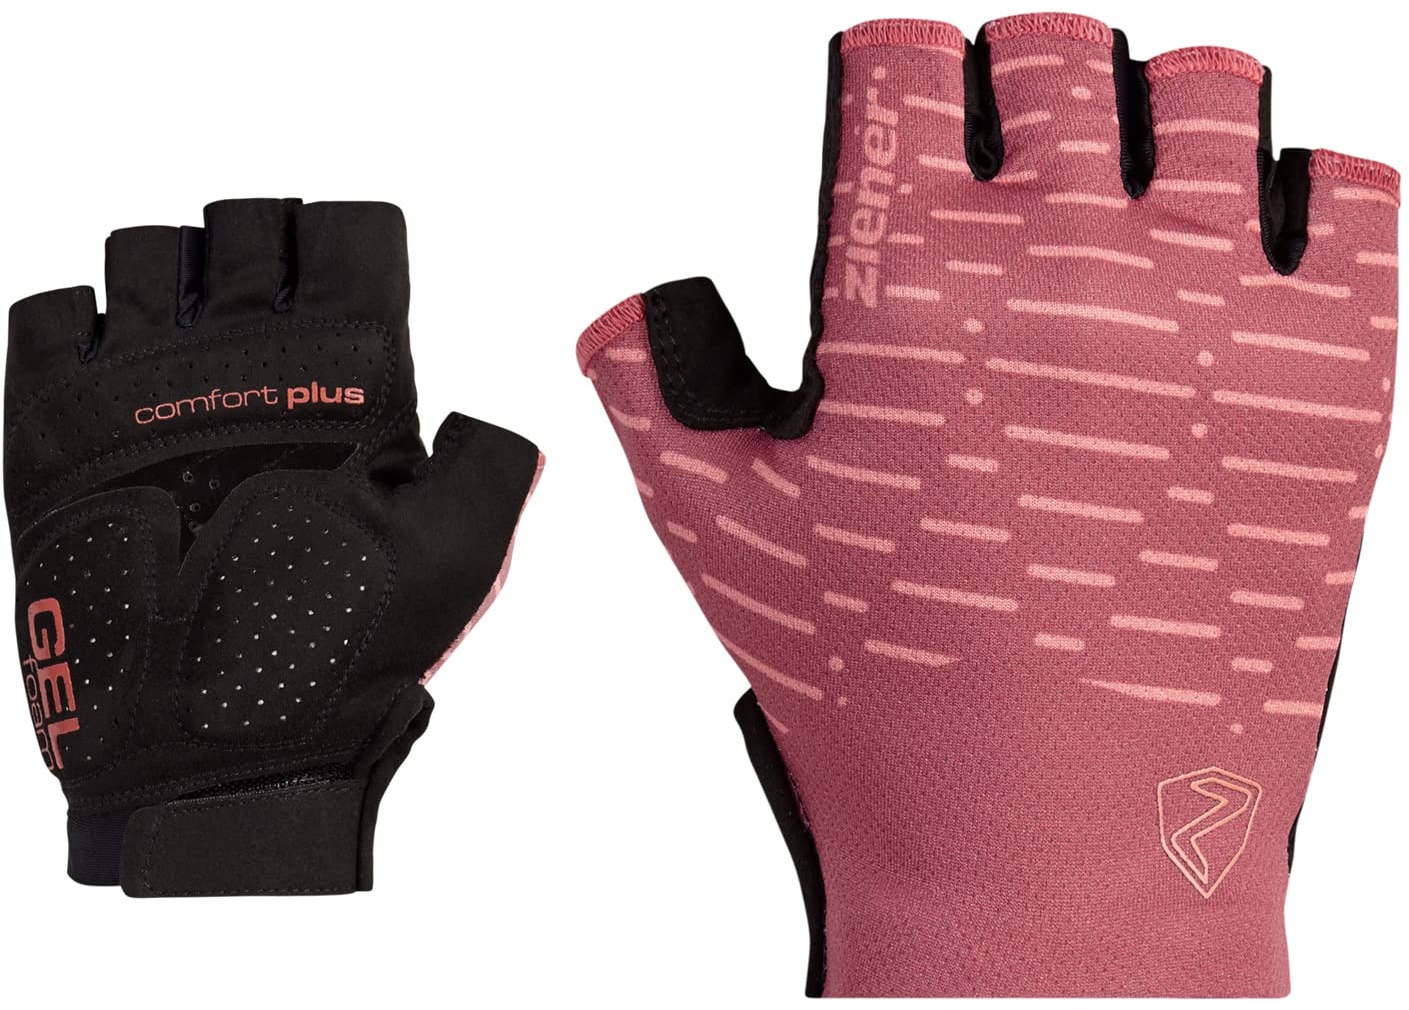 Ziener Damen Cammi Fahrrad/Mountainbike/Radsport-Handschuhe | Kurzfinger - atmungsaktiv,dämpfend, pink dust, 8